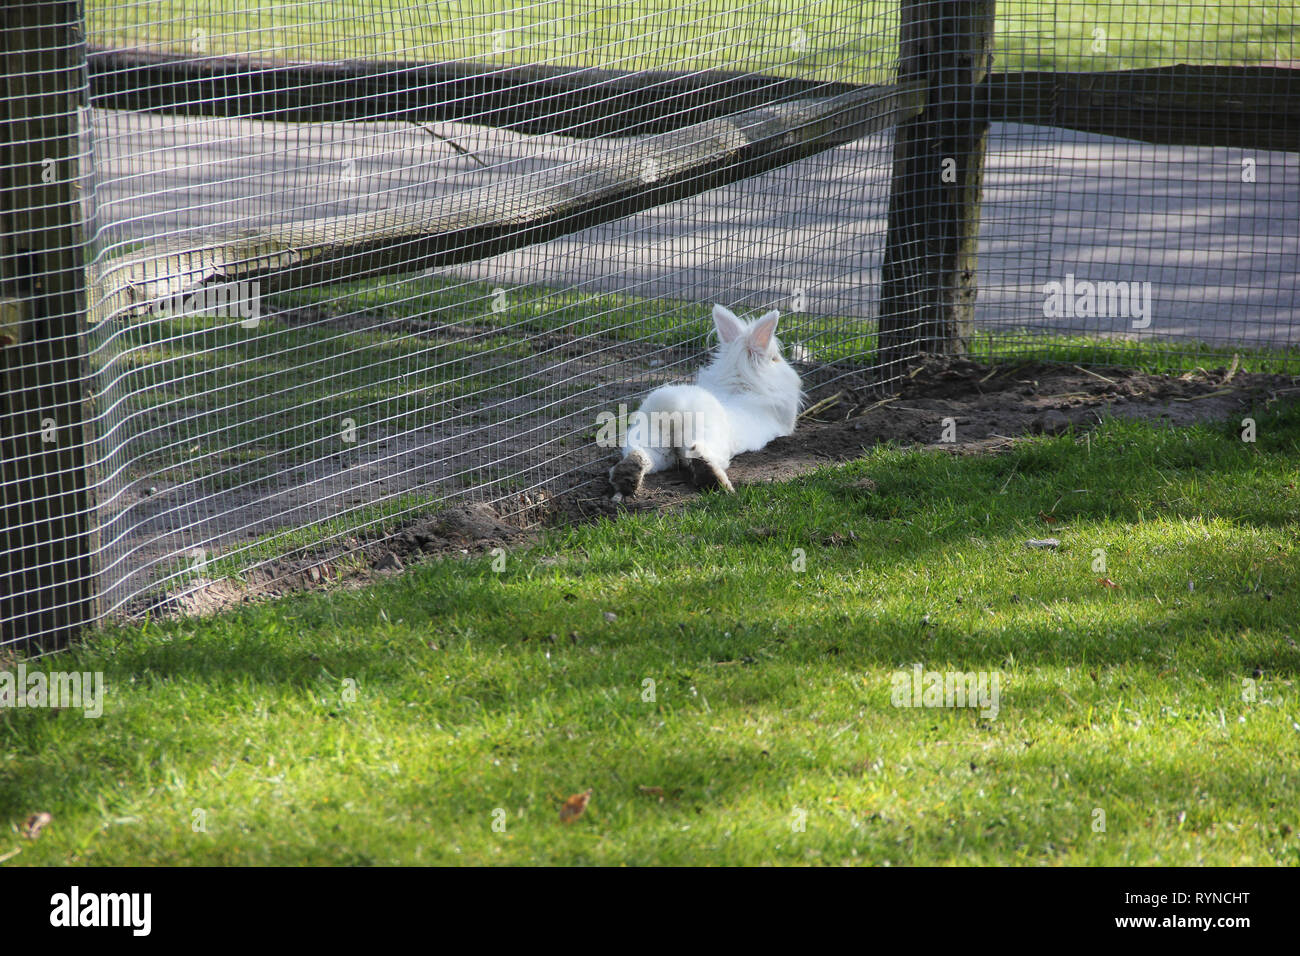 Flauschige weiße kleine Hase Hase von hinten in einen kleinen Zoo niedlich. Frühling im Keukenhof flower garden, Niederlande Stockfoto